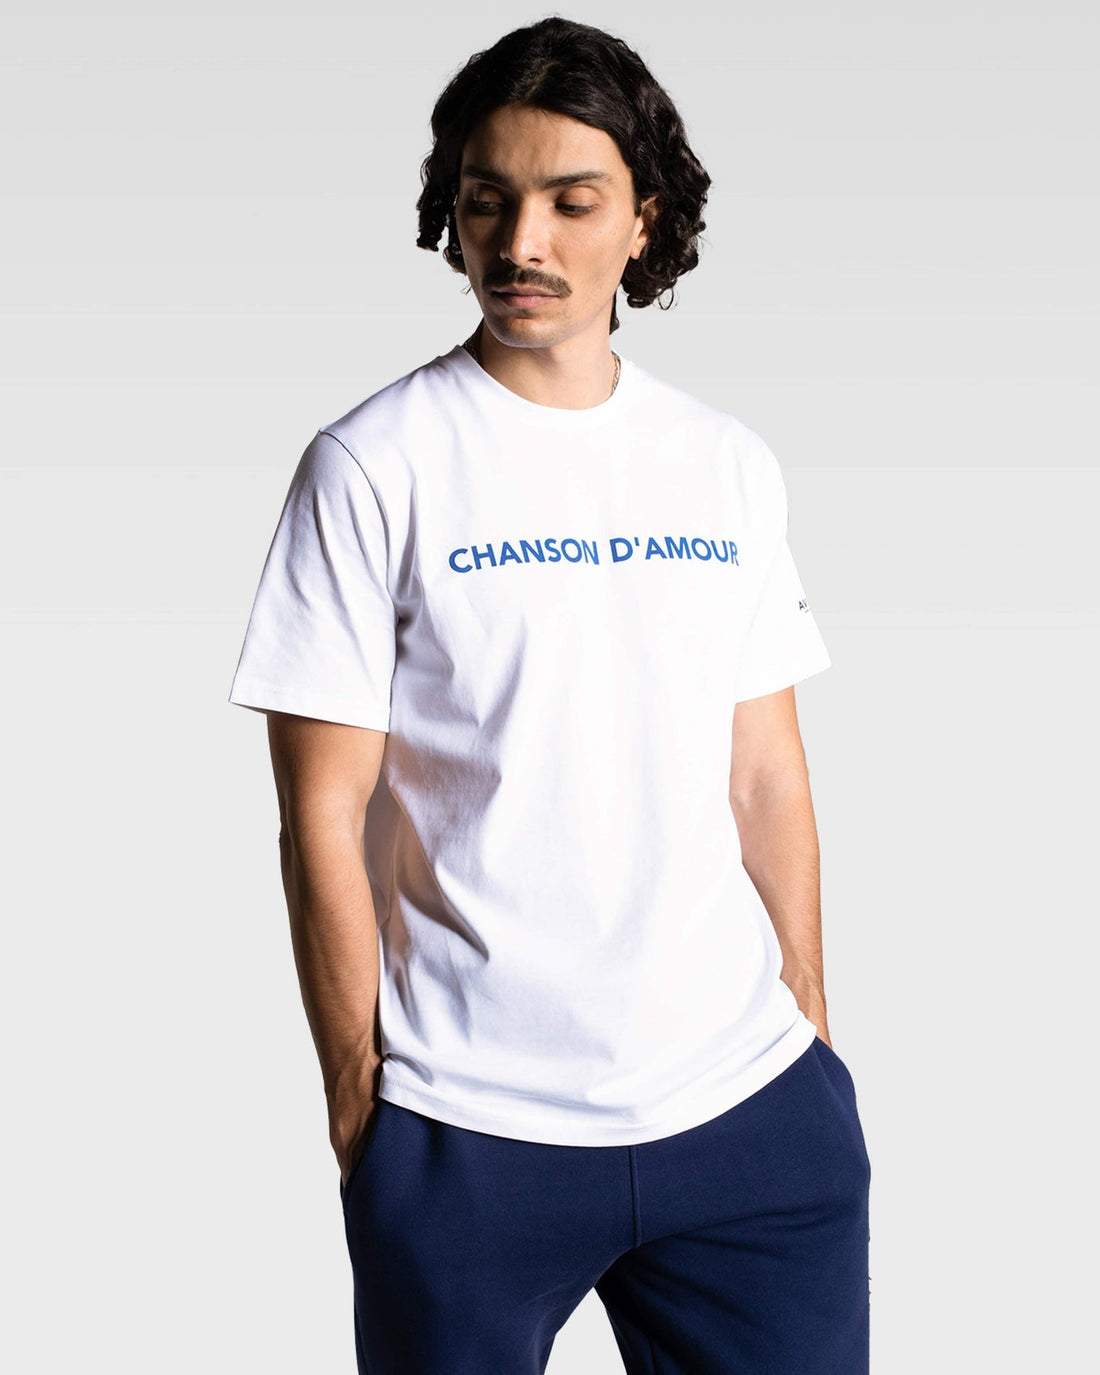 AVNIER • T-Shirt Source D'amour Chanson XS 